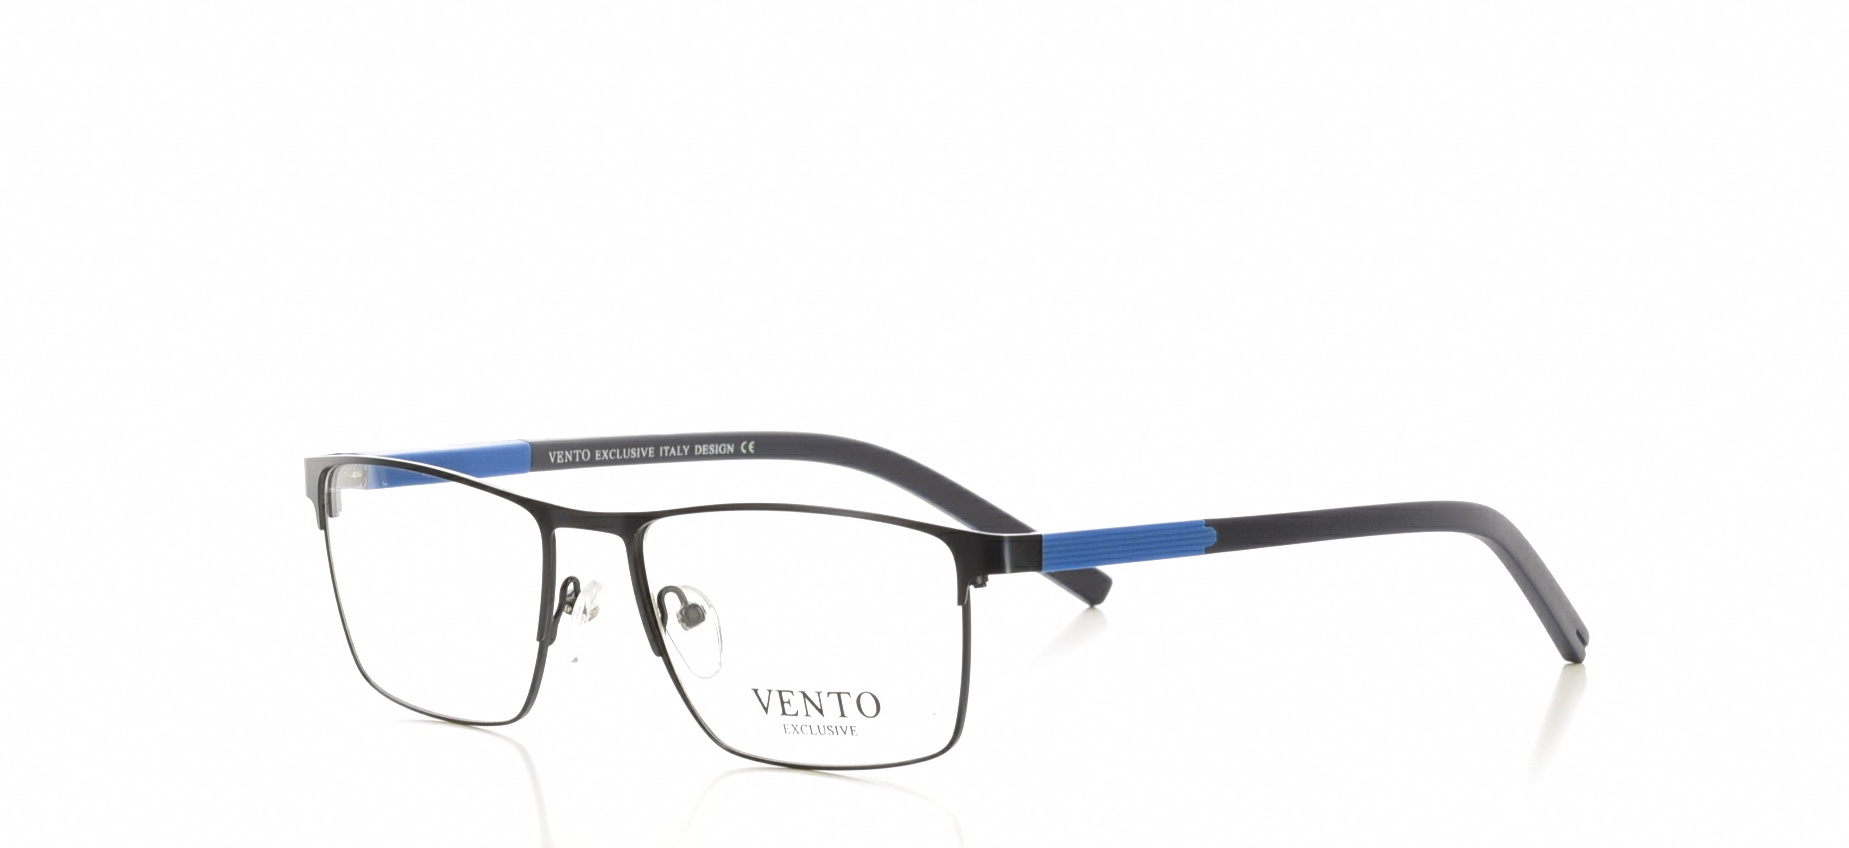 Rama ochelari vedere Vento